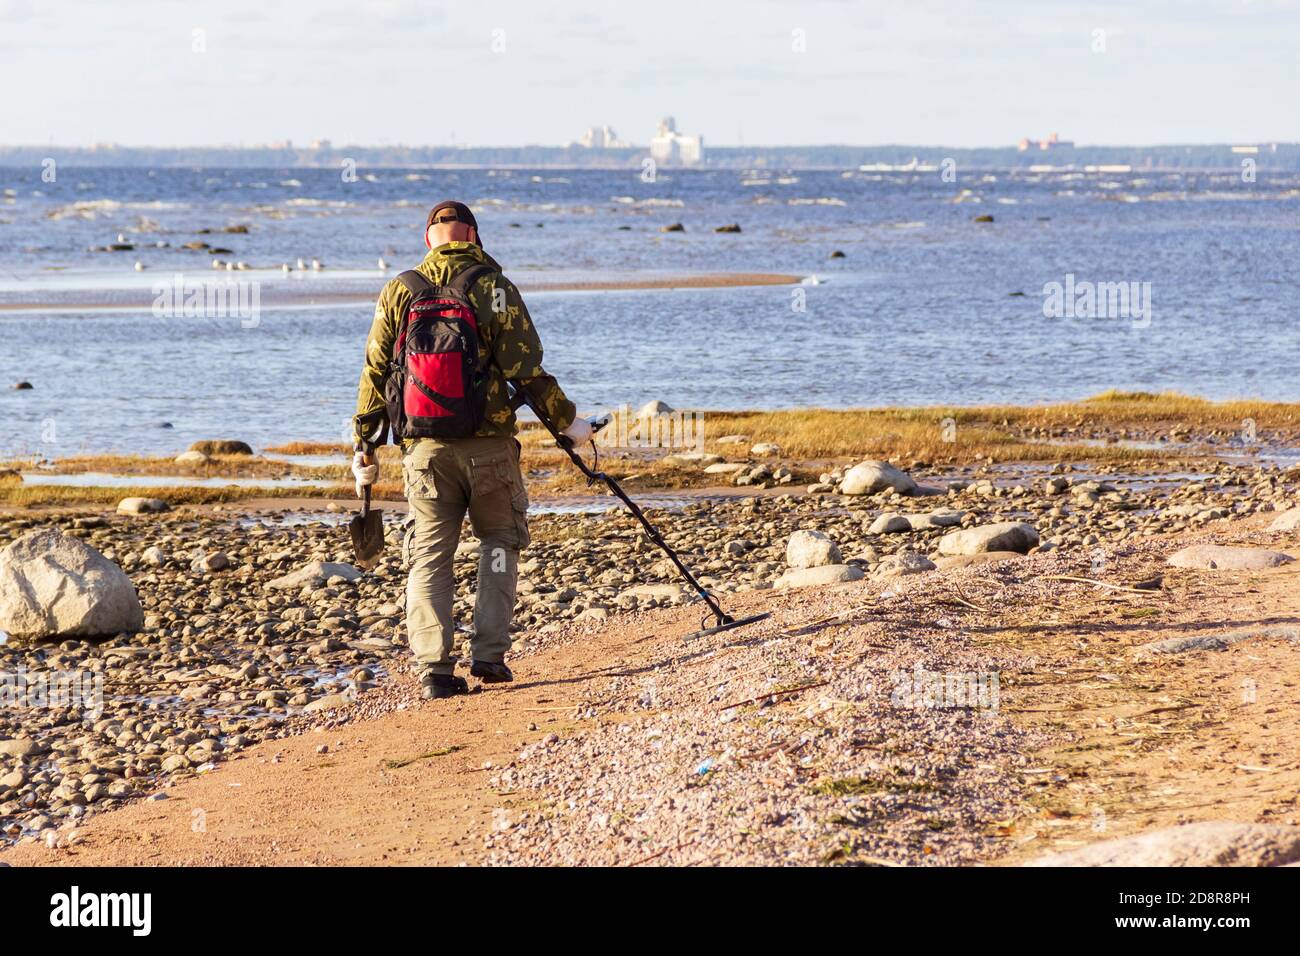 Ein Schatzsucher mit einem Metalldetektor geht am menschenleeren Sandstrand entlang auf der Suche nach verlorenen Münzen und Schmuck. Stockfoto